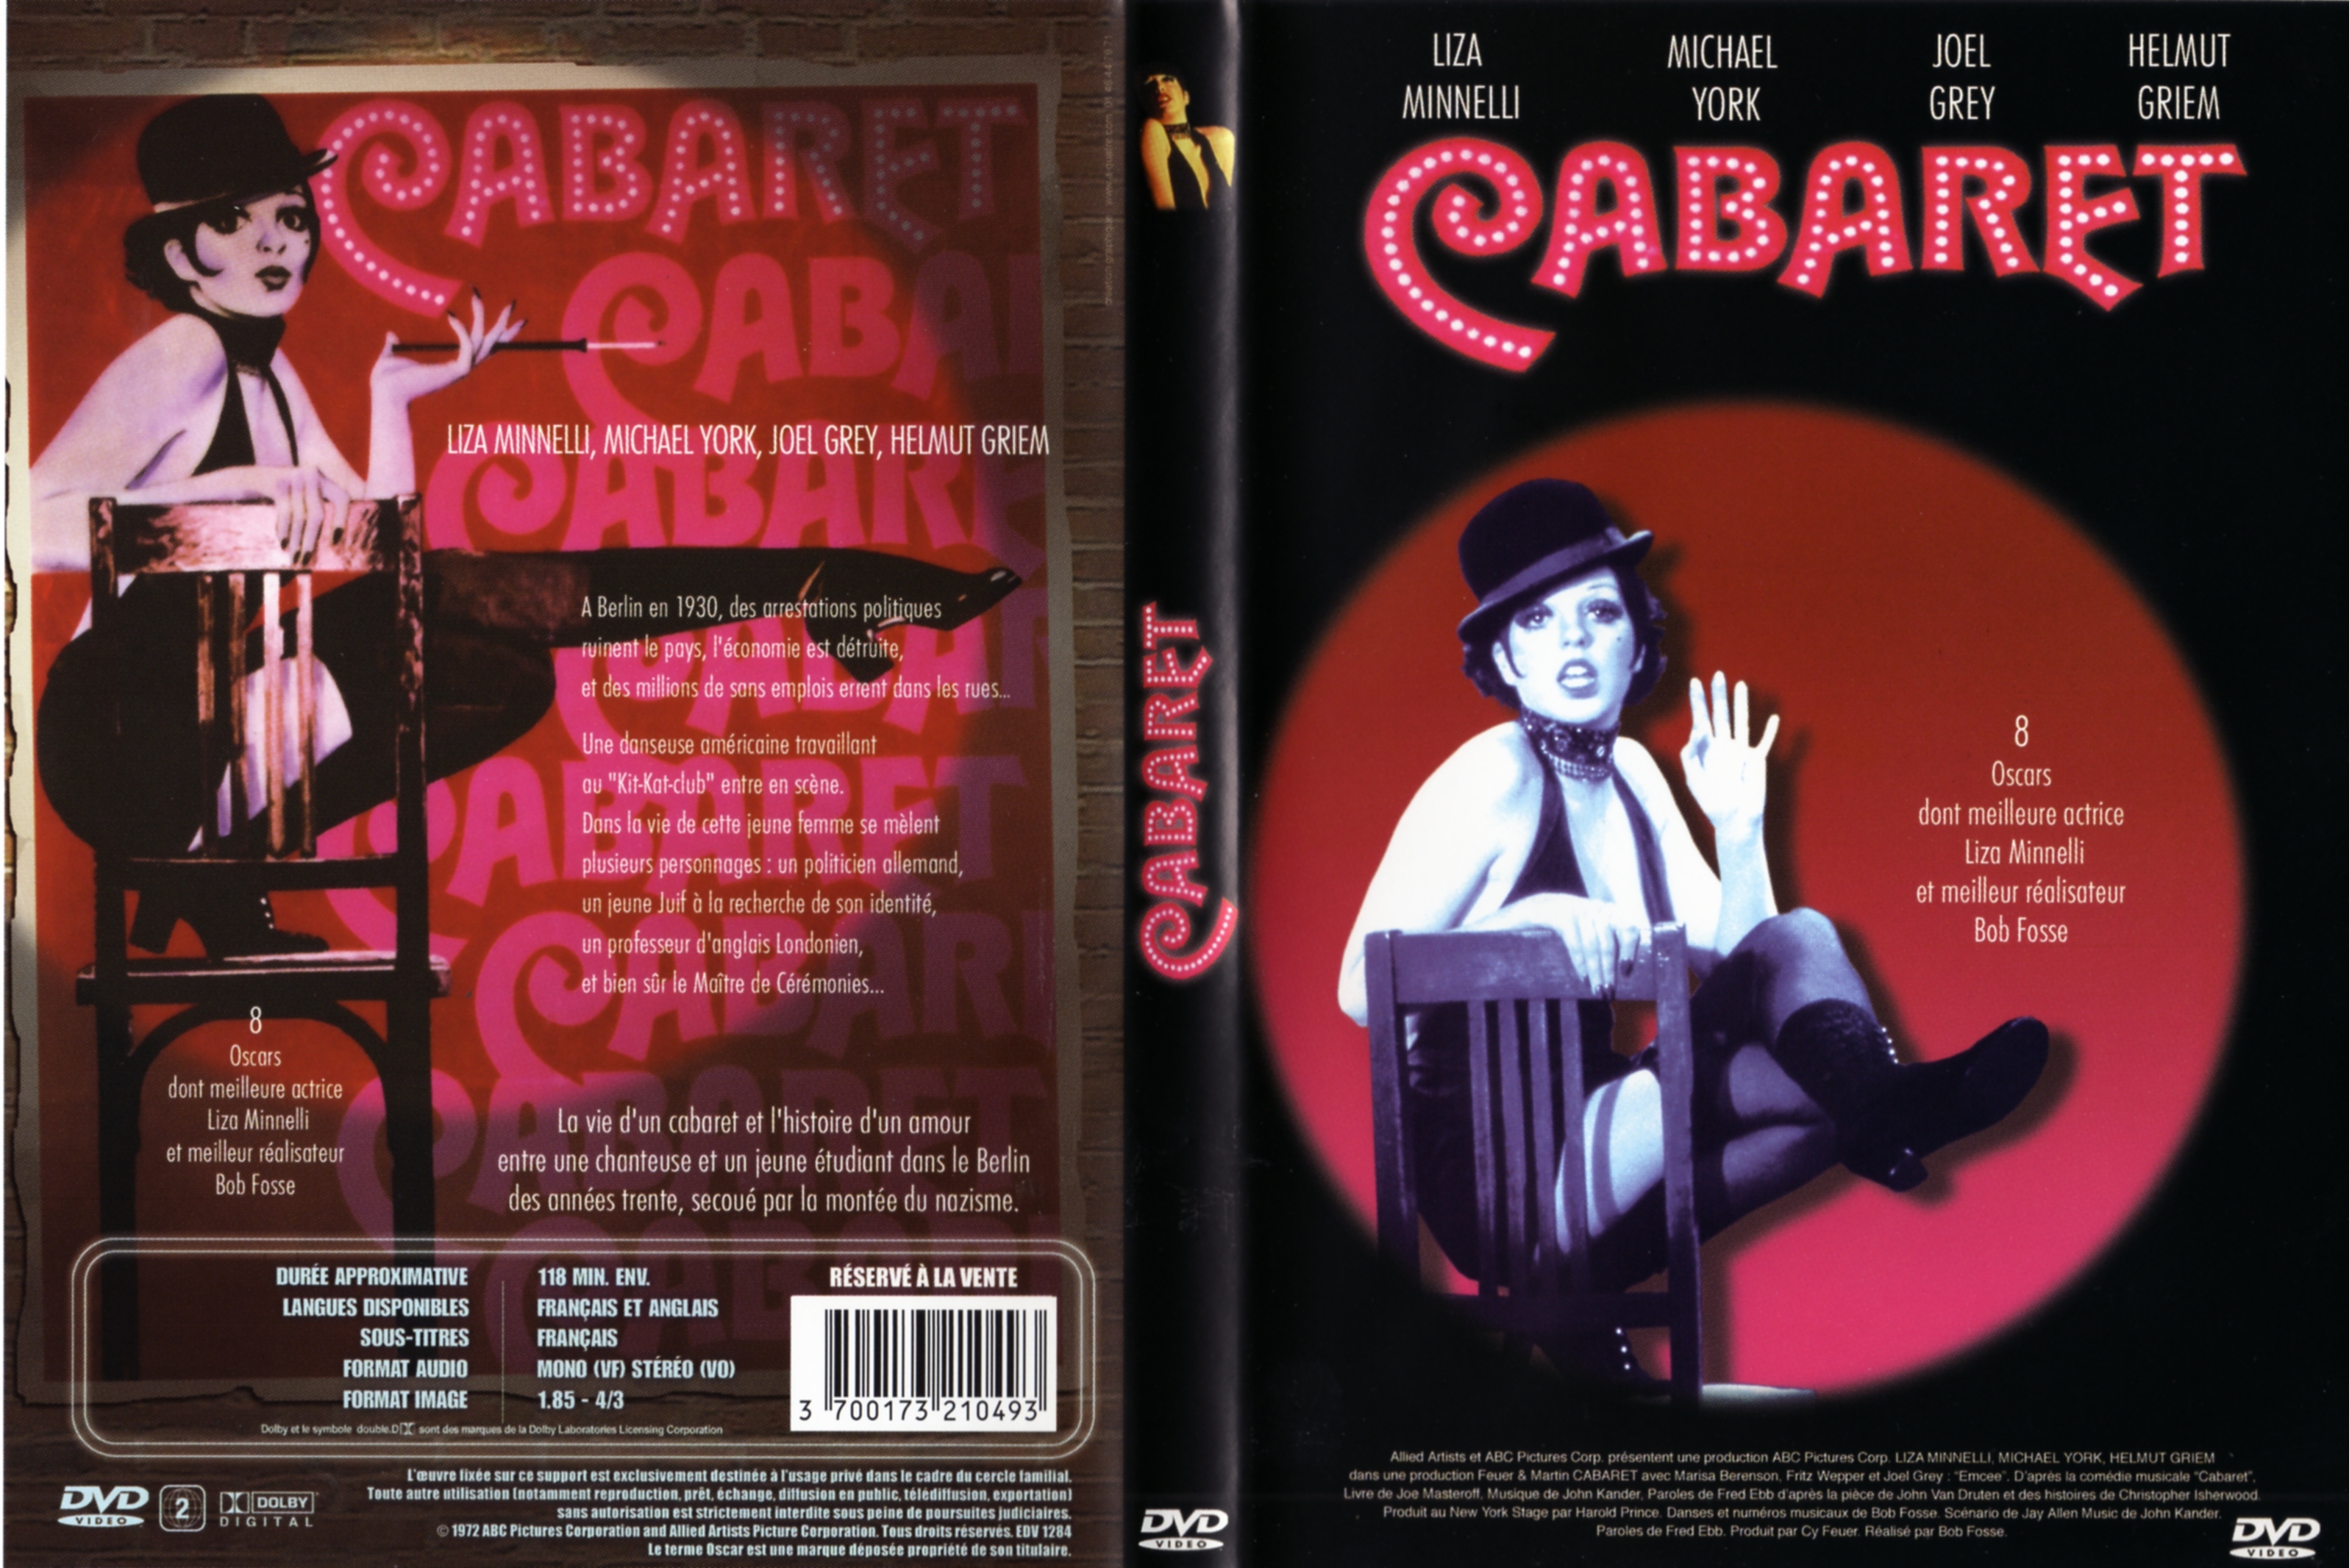 Jaquette DVD Cabaret v2